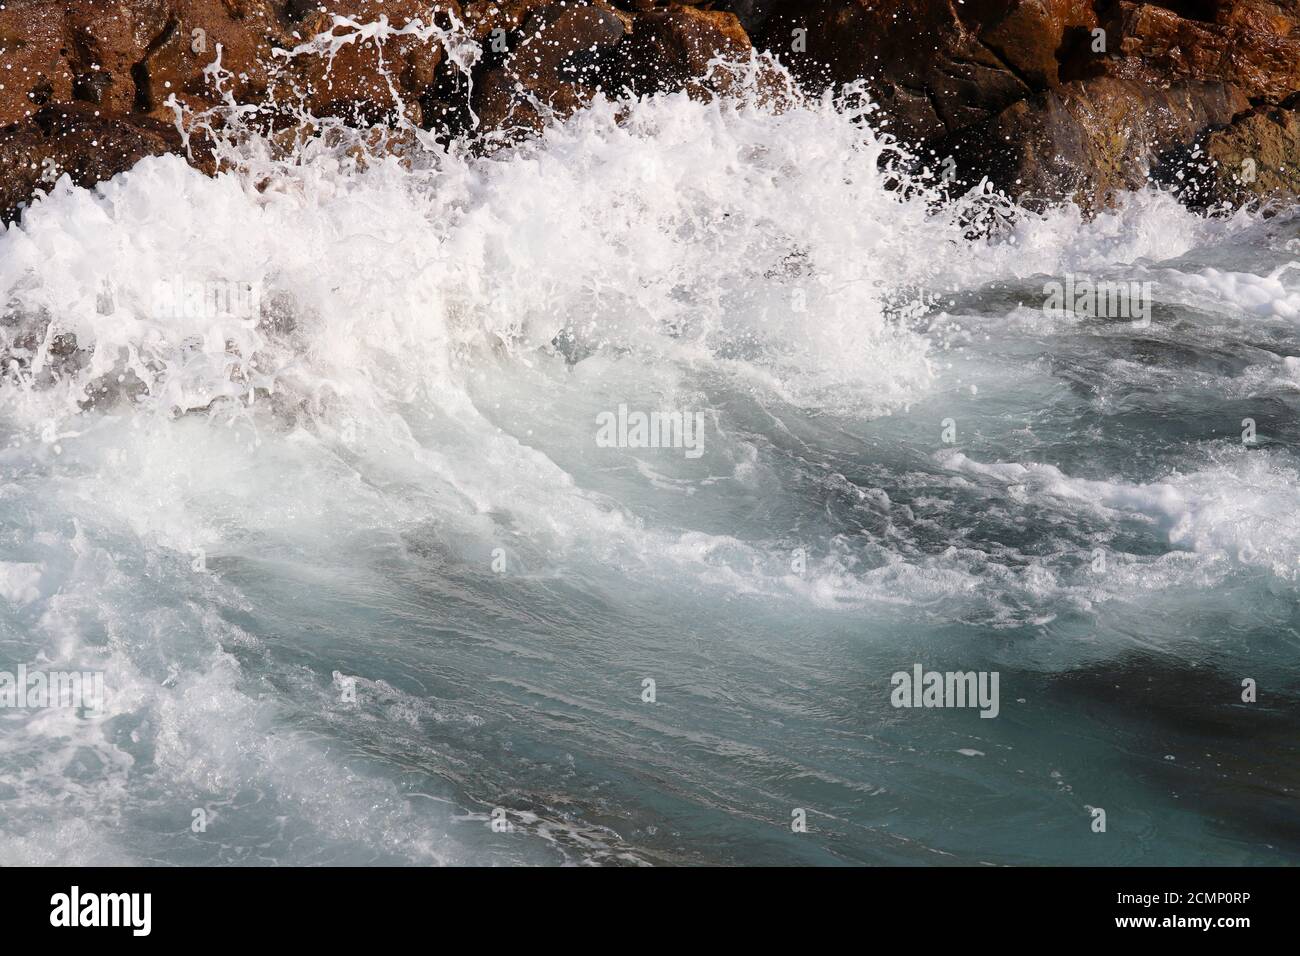 Les vagues se brisent sur les rochers sur le bord de mer. Nettoyer l'eau mousseuse sur une pierre, tempête de mer Banque D'Images